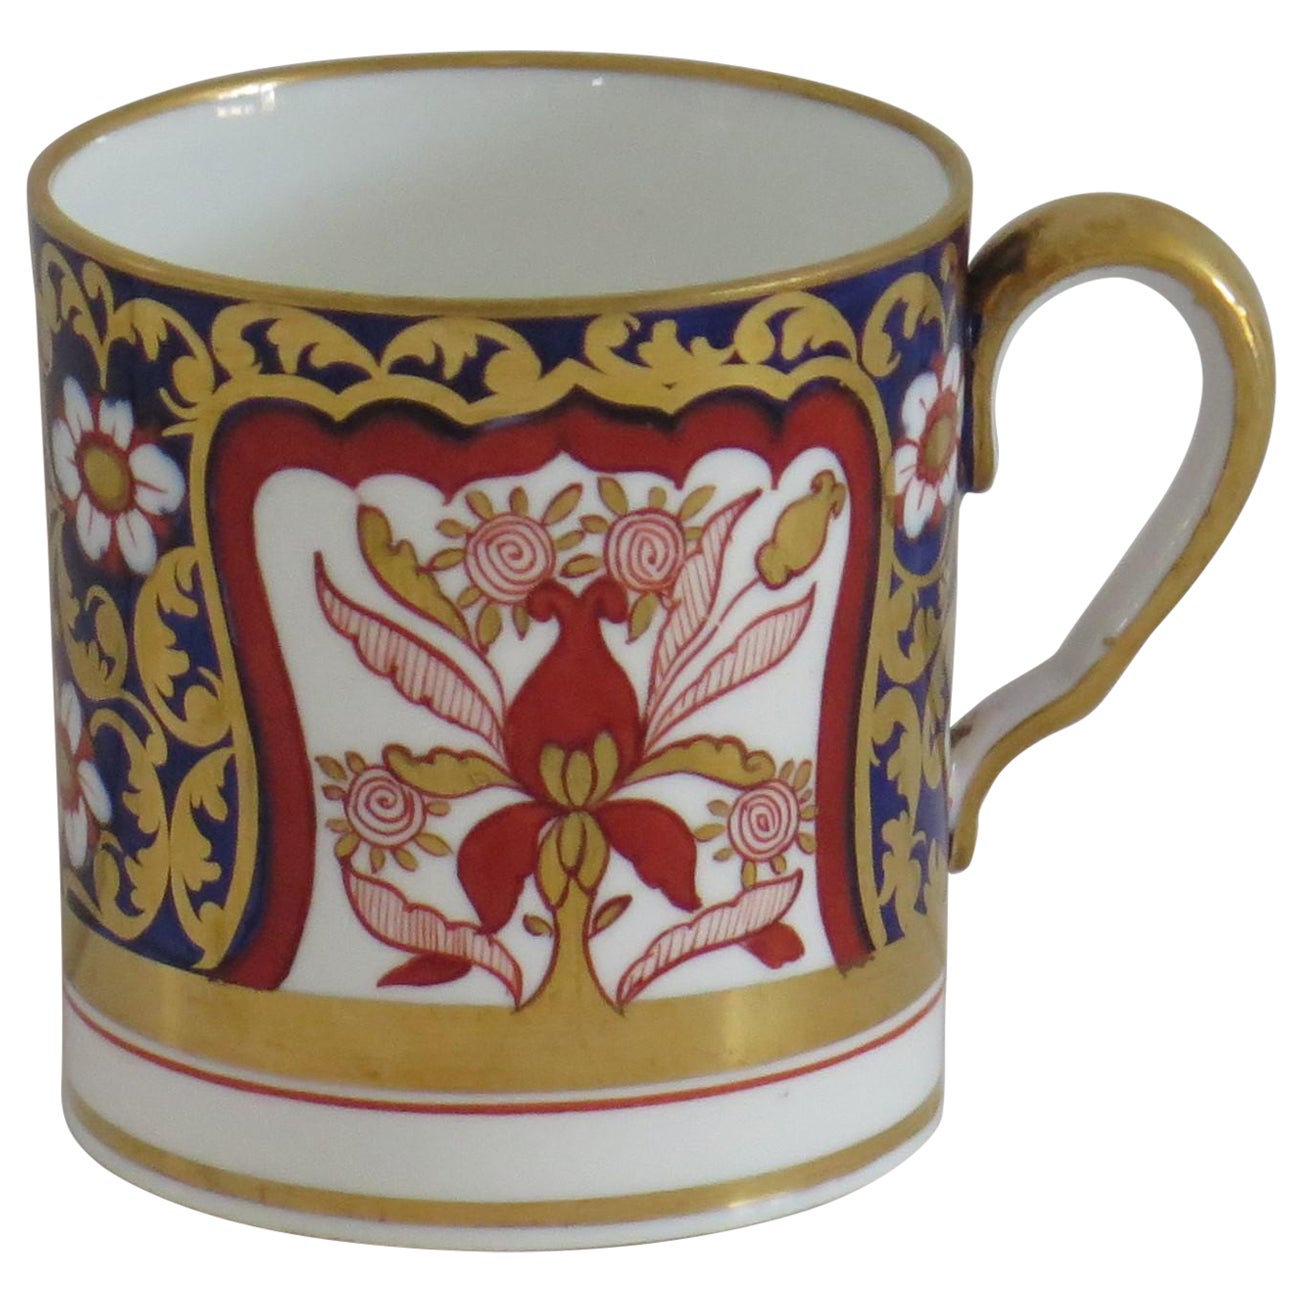 Canne à café « Spode » en porcelaine de Copeland finement peinte et dorée à la main, vers 1860